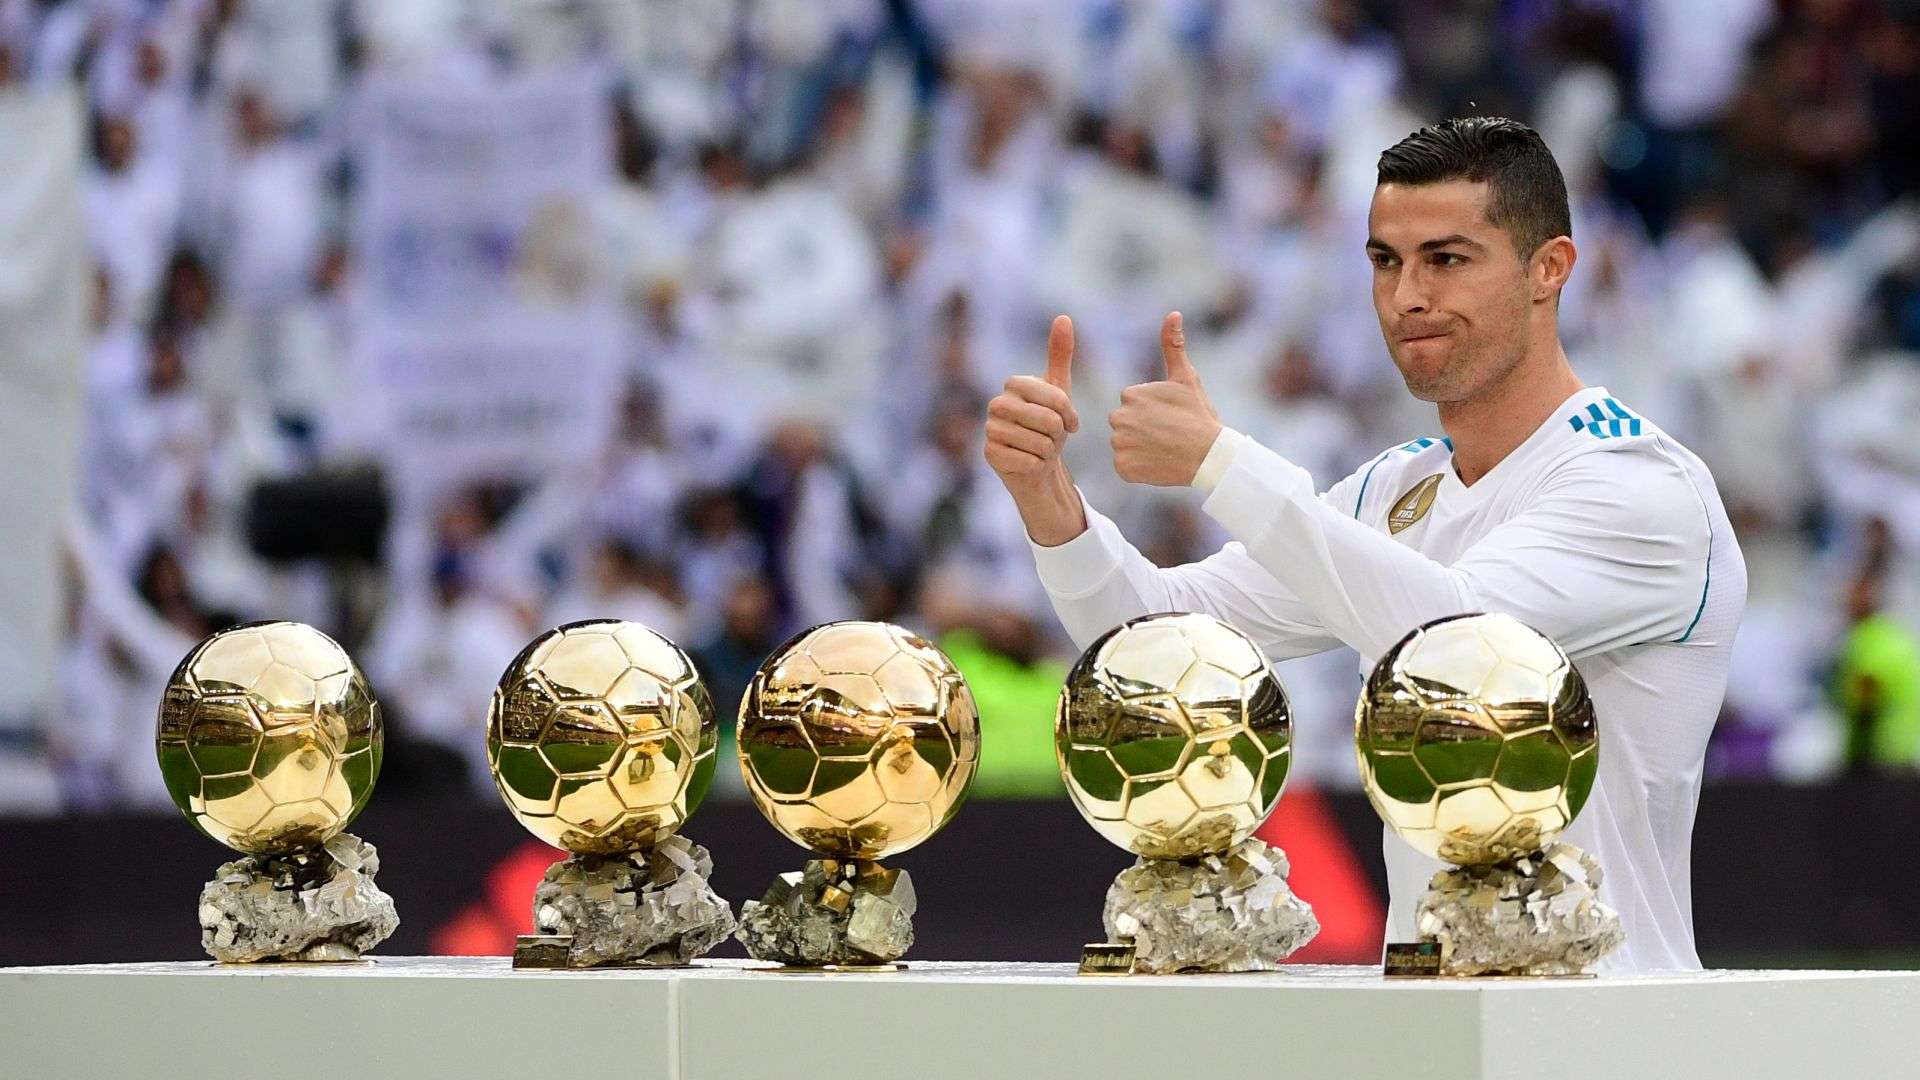 Cristiano Ronaldo, golden ball